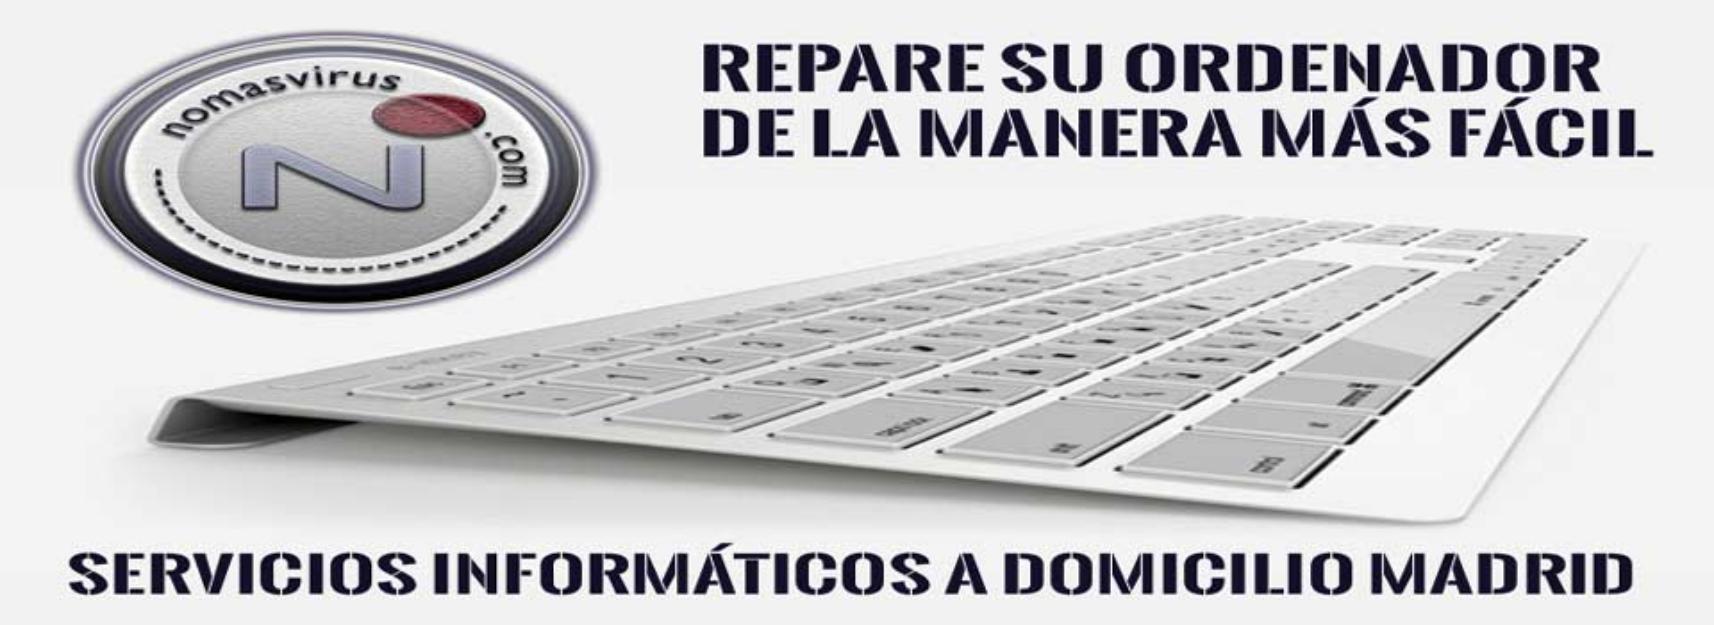 Reparación de ordenadores Madrid a Domicilio